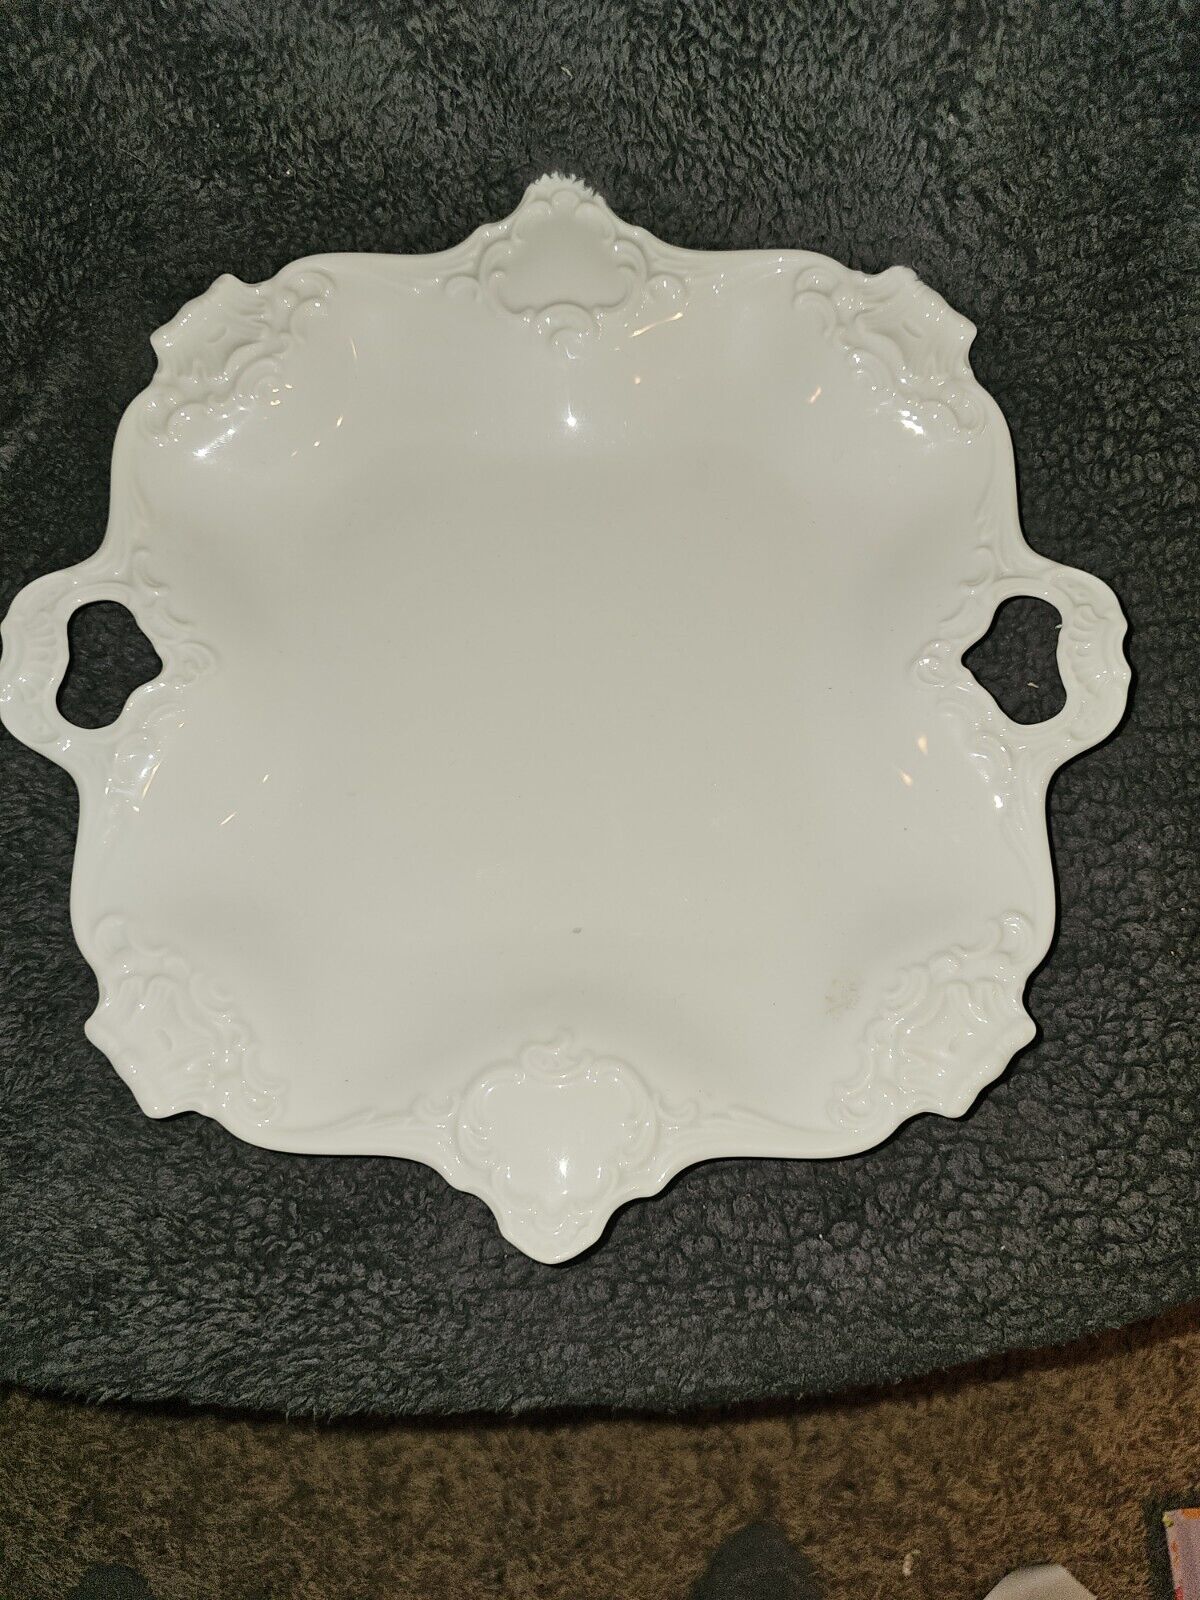 Vintage Kaiser White Porcelain Serving Tray